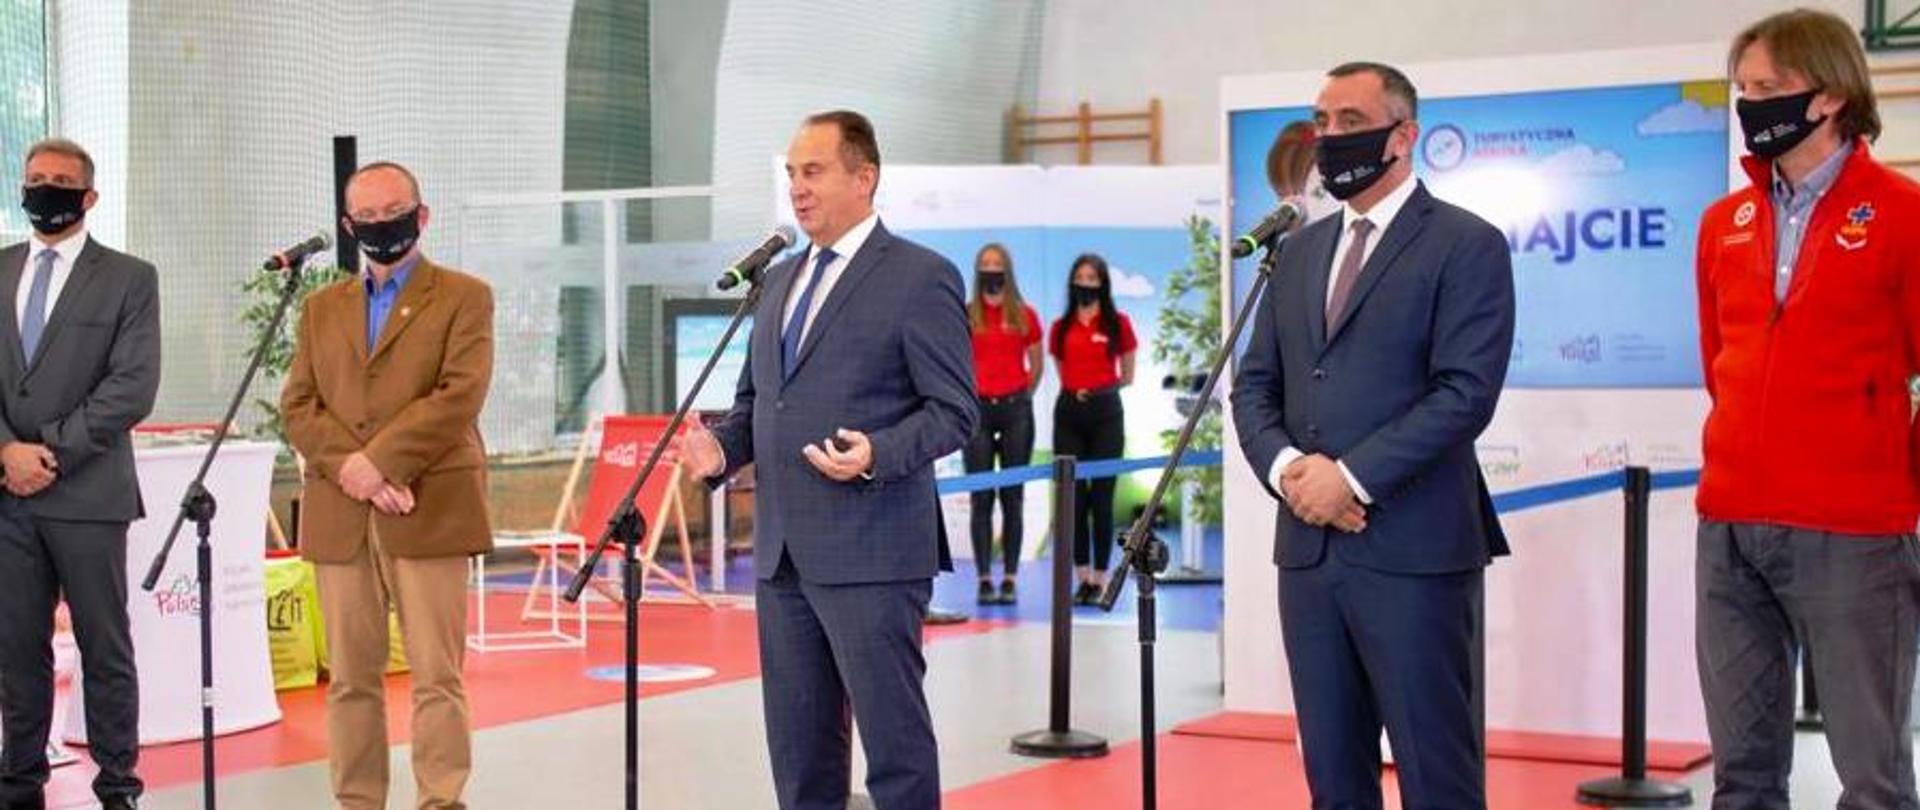 Wiceminister Andrzej Gut-Mostowy stoi w środku przed mikrofonem w sali gimnastycznej w szkole i opowiada o projekcie "Turystyczna Szkoła".